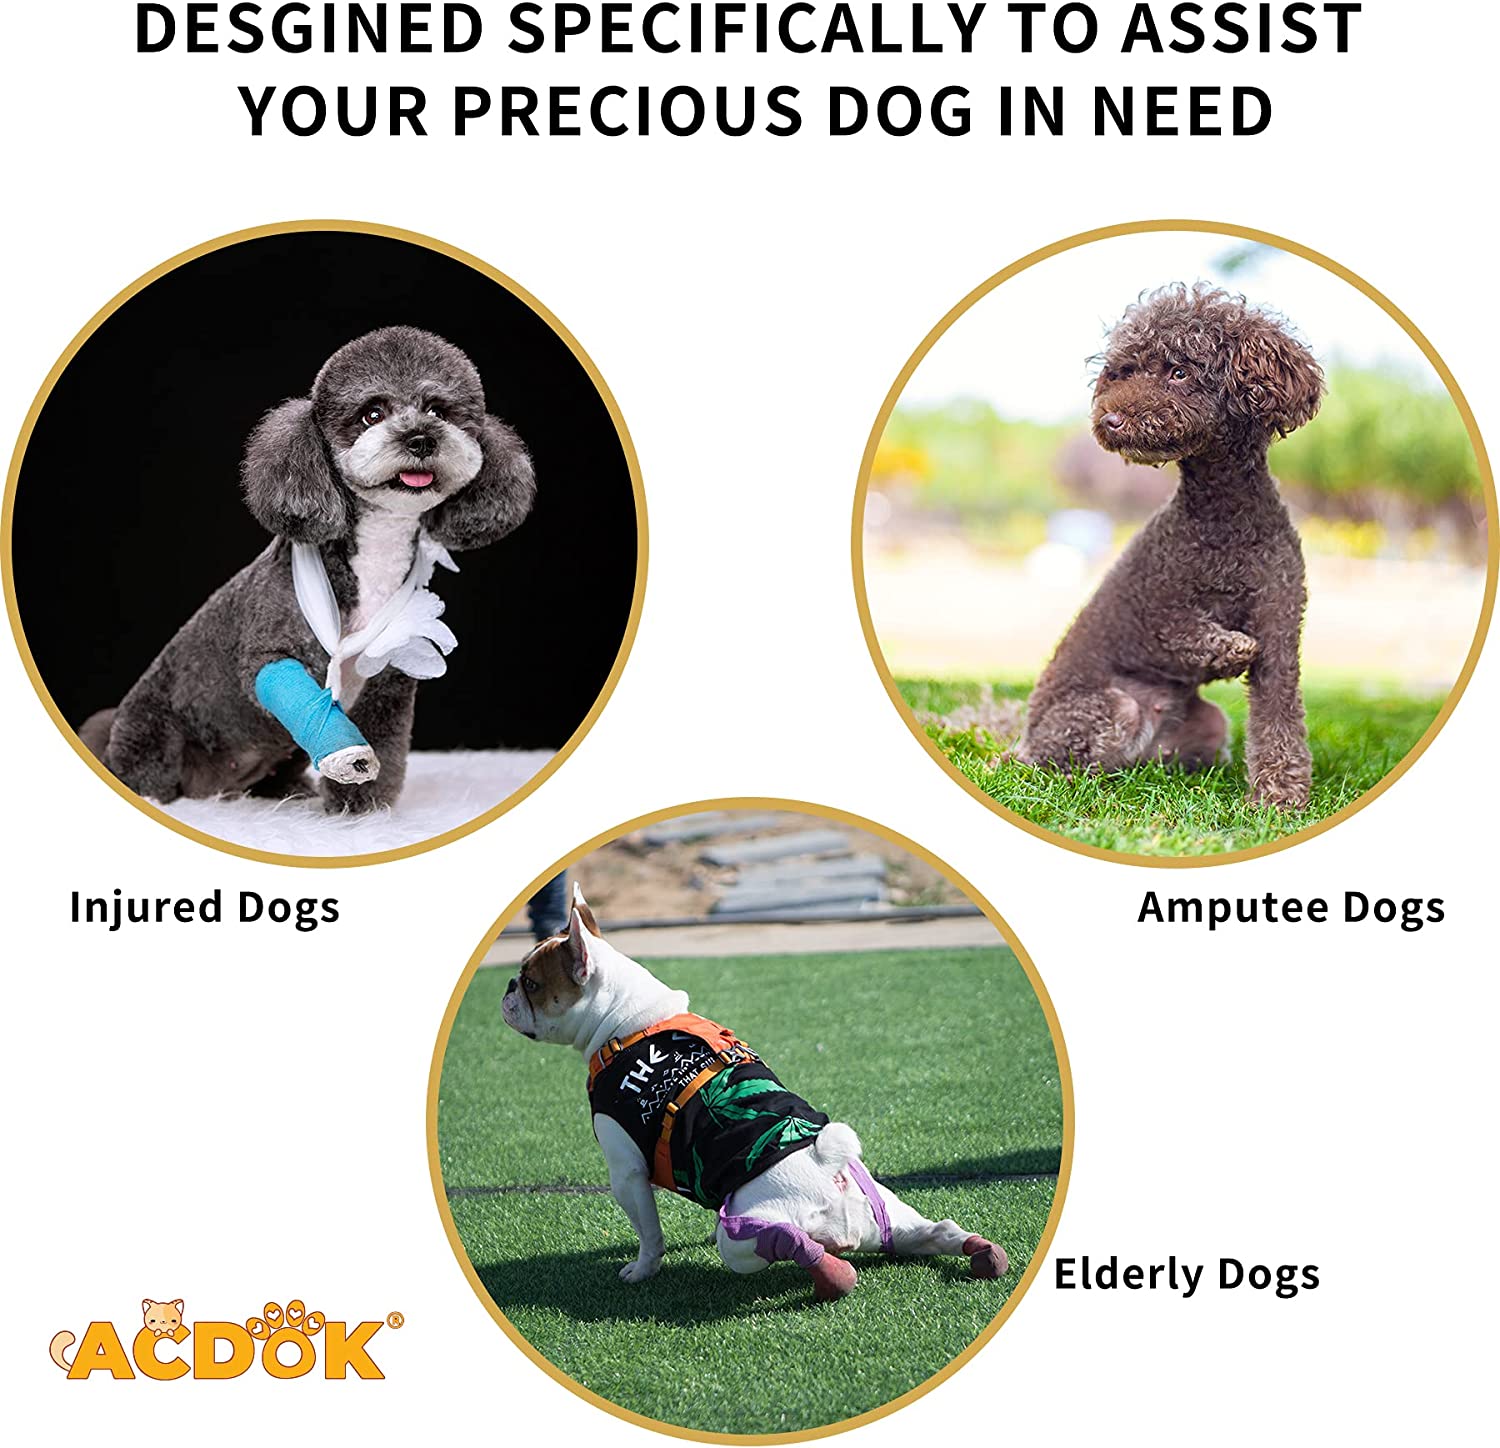 طراحی سگک های ایمنی برای تنظیم سفتی آسان است، بدون طراحی قلاب و حلقه، موها را نمی چسباند و به پوست سگ آسیب نمی رساند، پارچه های نرم و قابل تنفس انتخاب شده است، بادوام و قابل شستشو است و از گرمای تند برای سگ شما جلوگیری می کند.